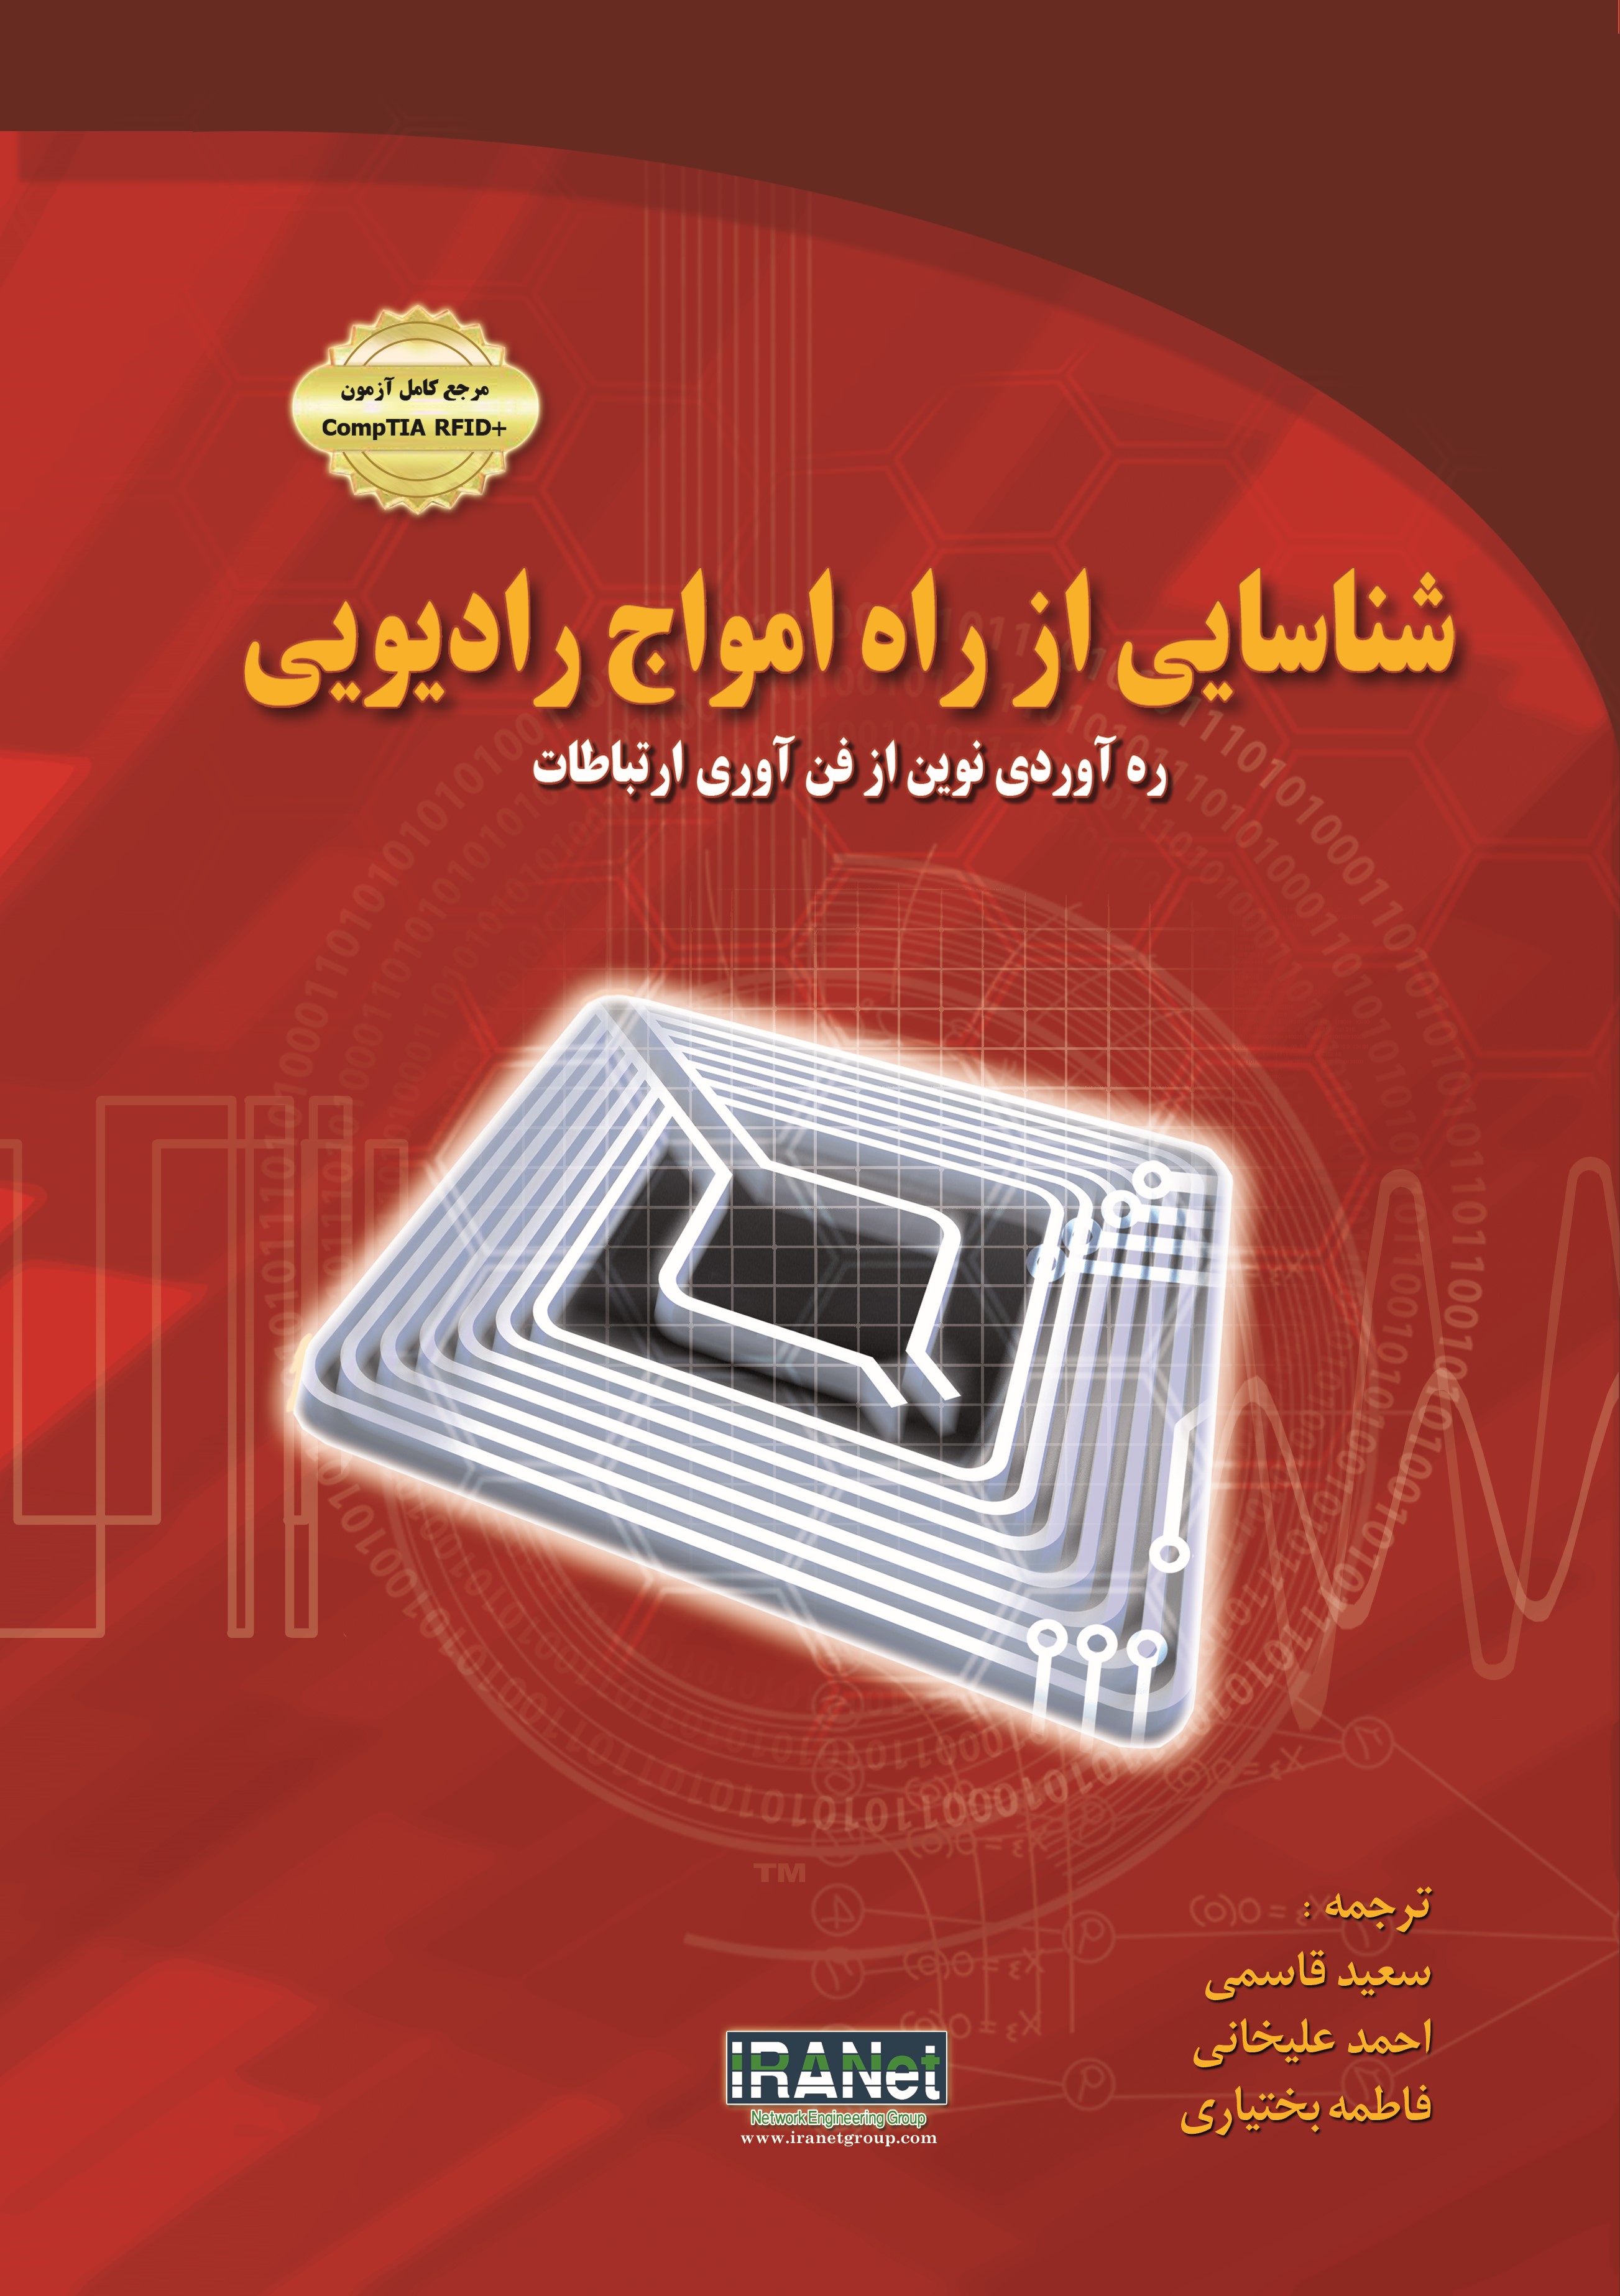  کتاب شناسایی از راه امواج رادیویی ره آوردی نوین از فن آوری ارتباطات RFID